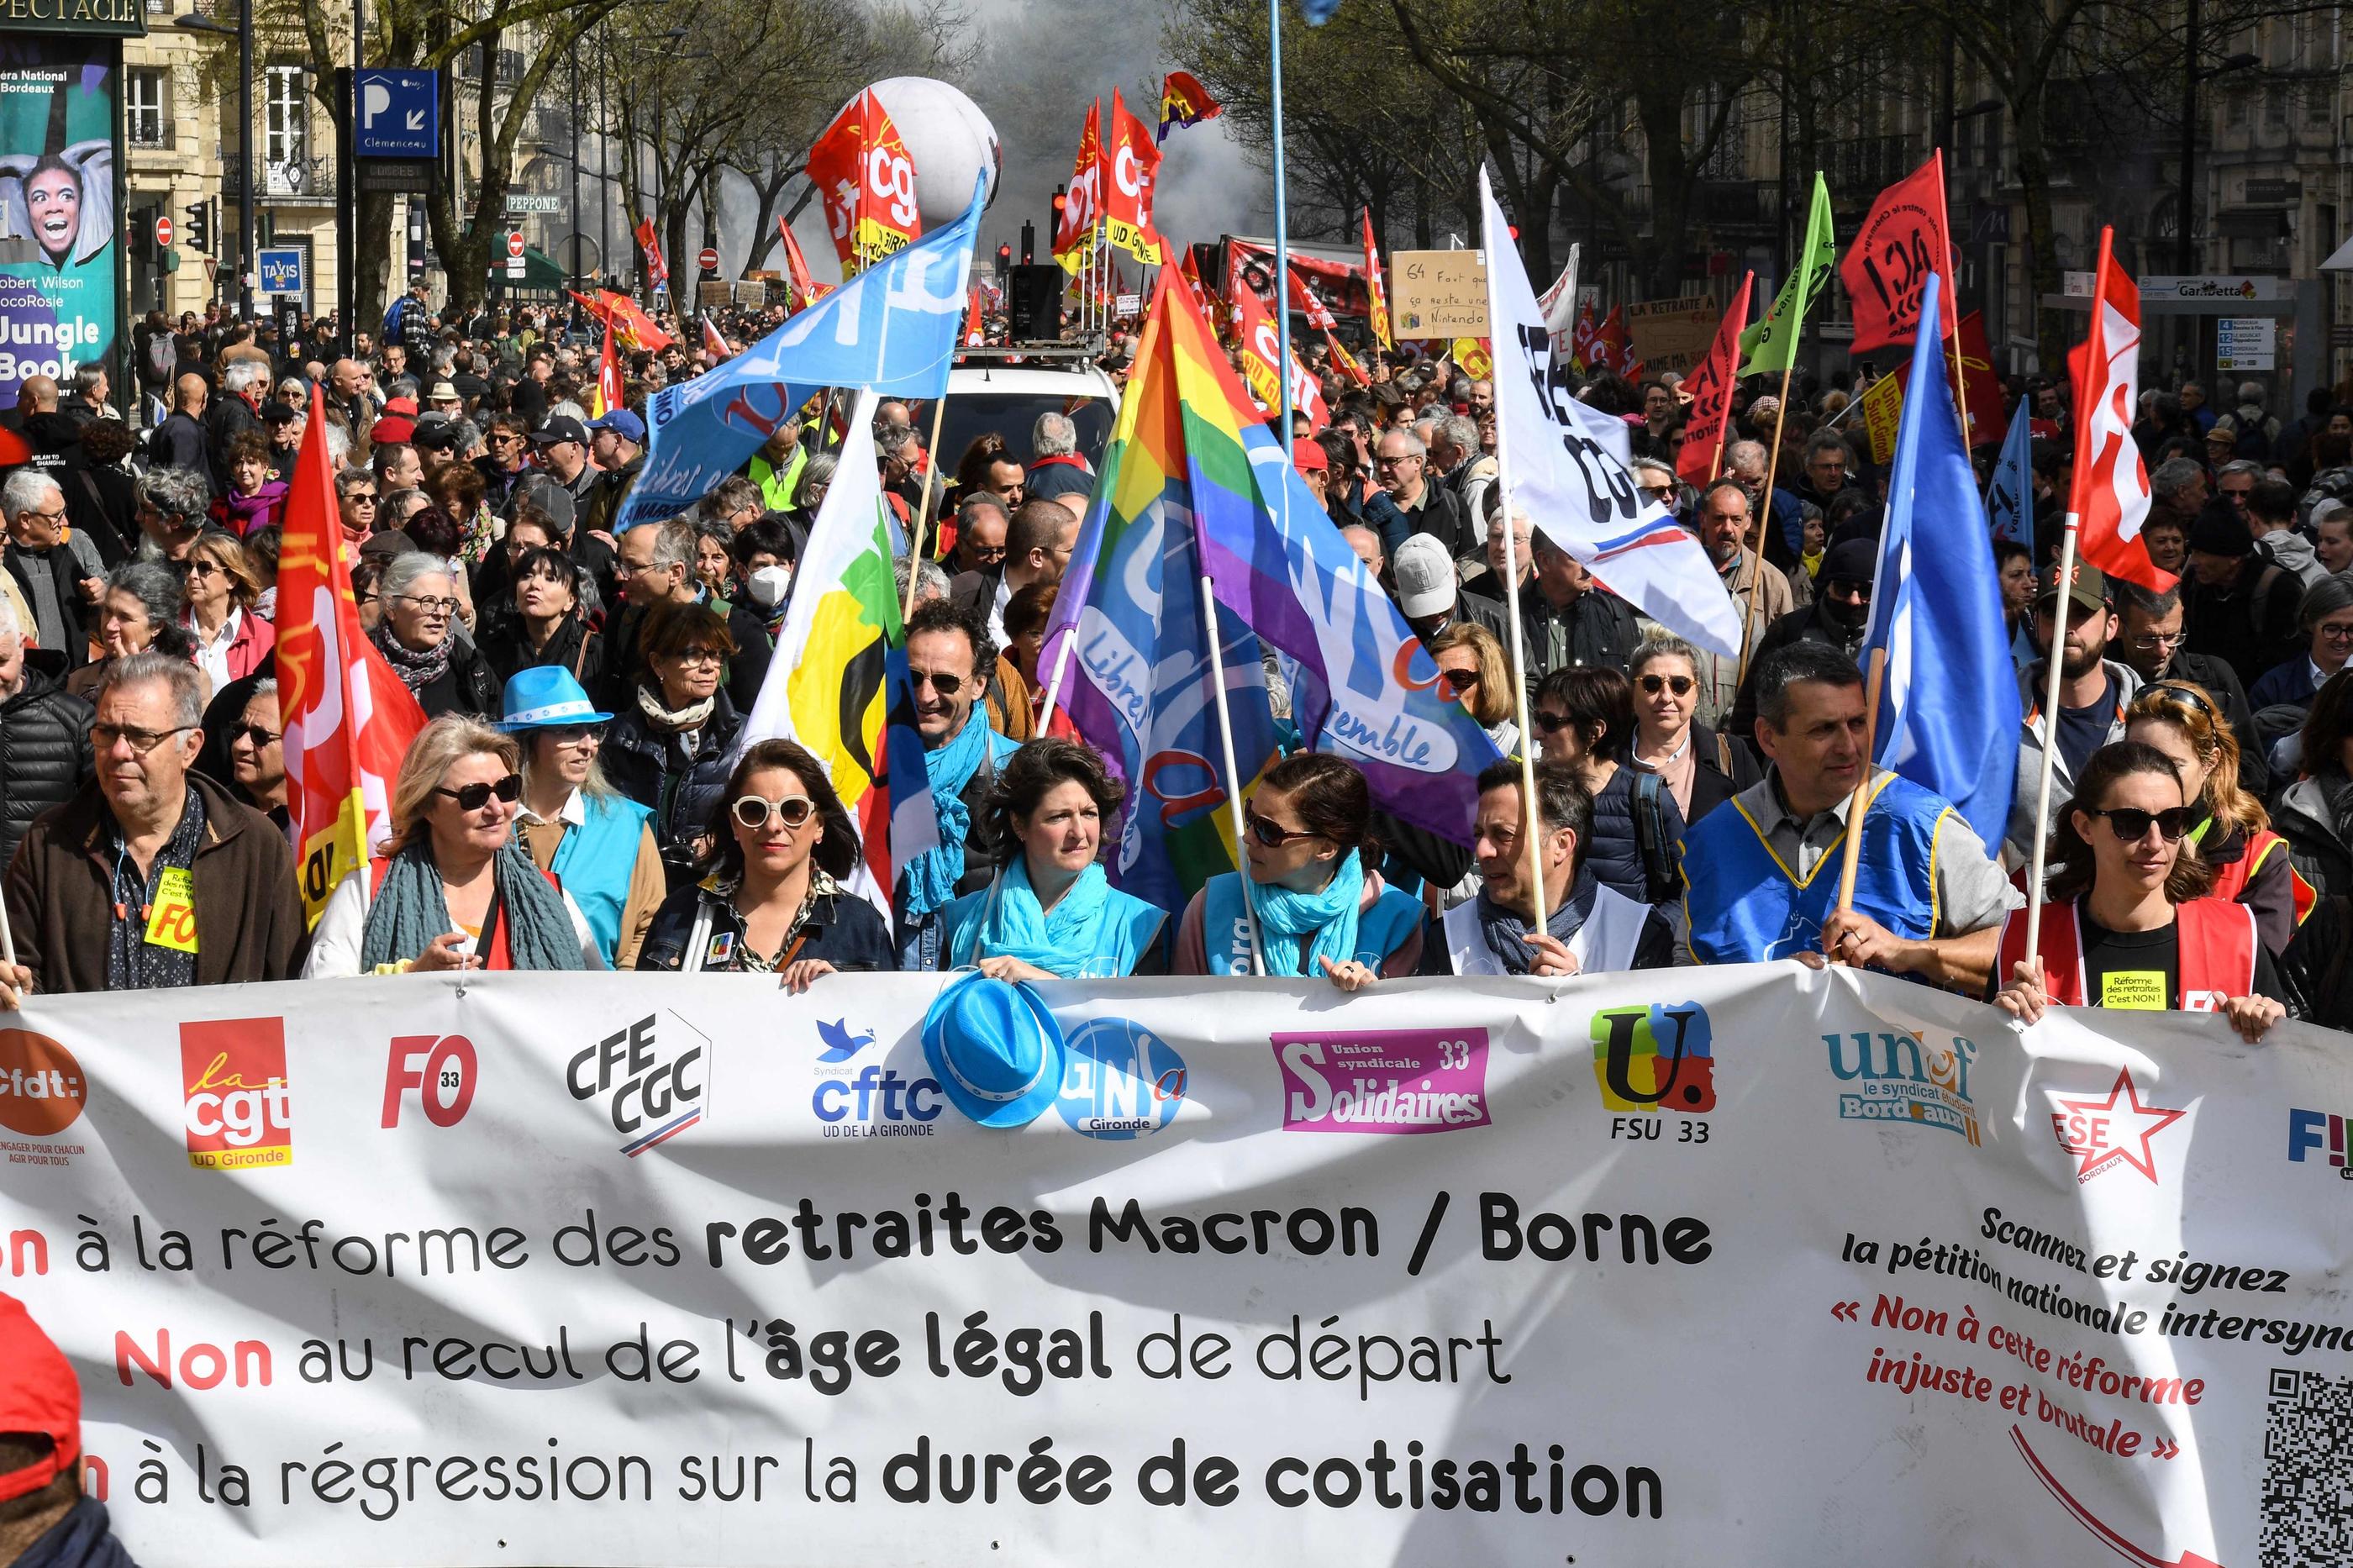 Mardi, pour la 10e journée de mobilisation contre la réforme des retraites, le cortège à Bordeaux (Gironde) a réuni 80 000 personnes, selon les syndicats, plus de 10 000, d’après la préfecture. AFP/Mehdi Fedouach